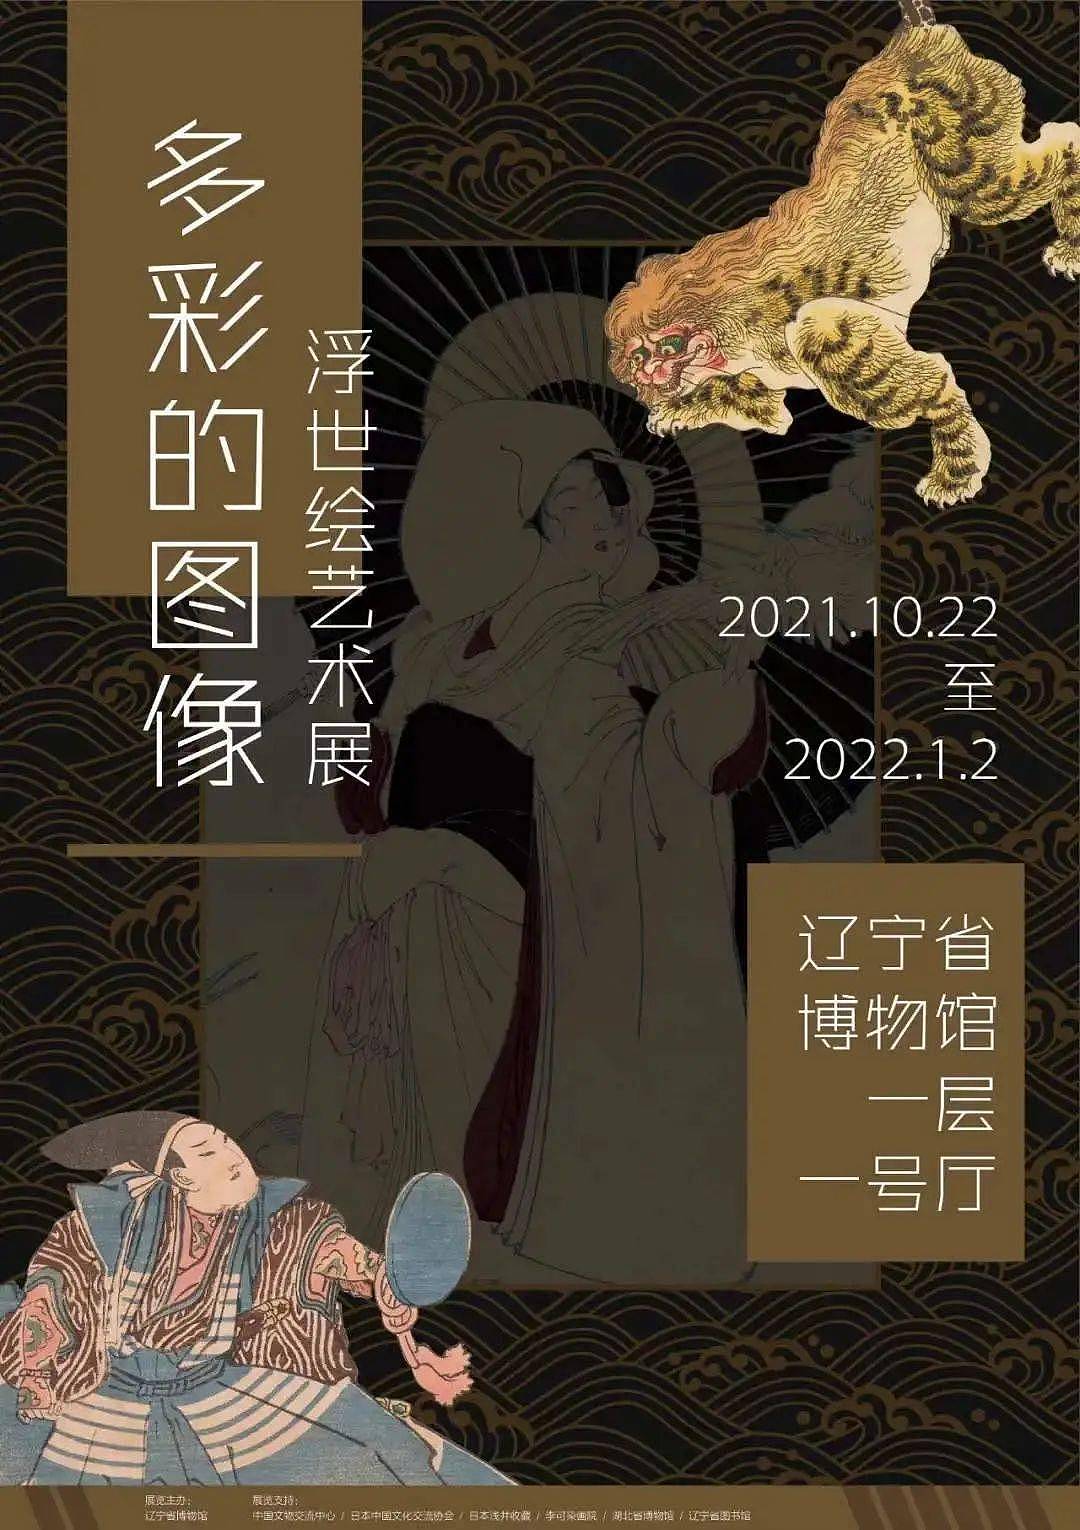 我馆两组展览海报入围“2021年中国博物馆美术馆海报设计年度推介100强”！ - 4